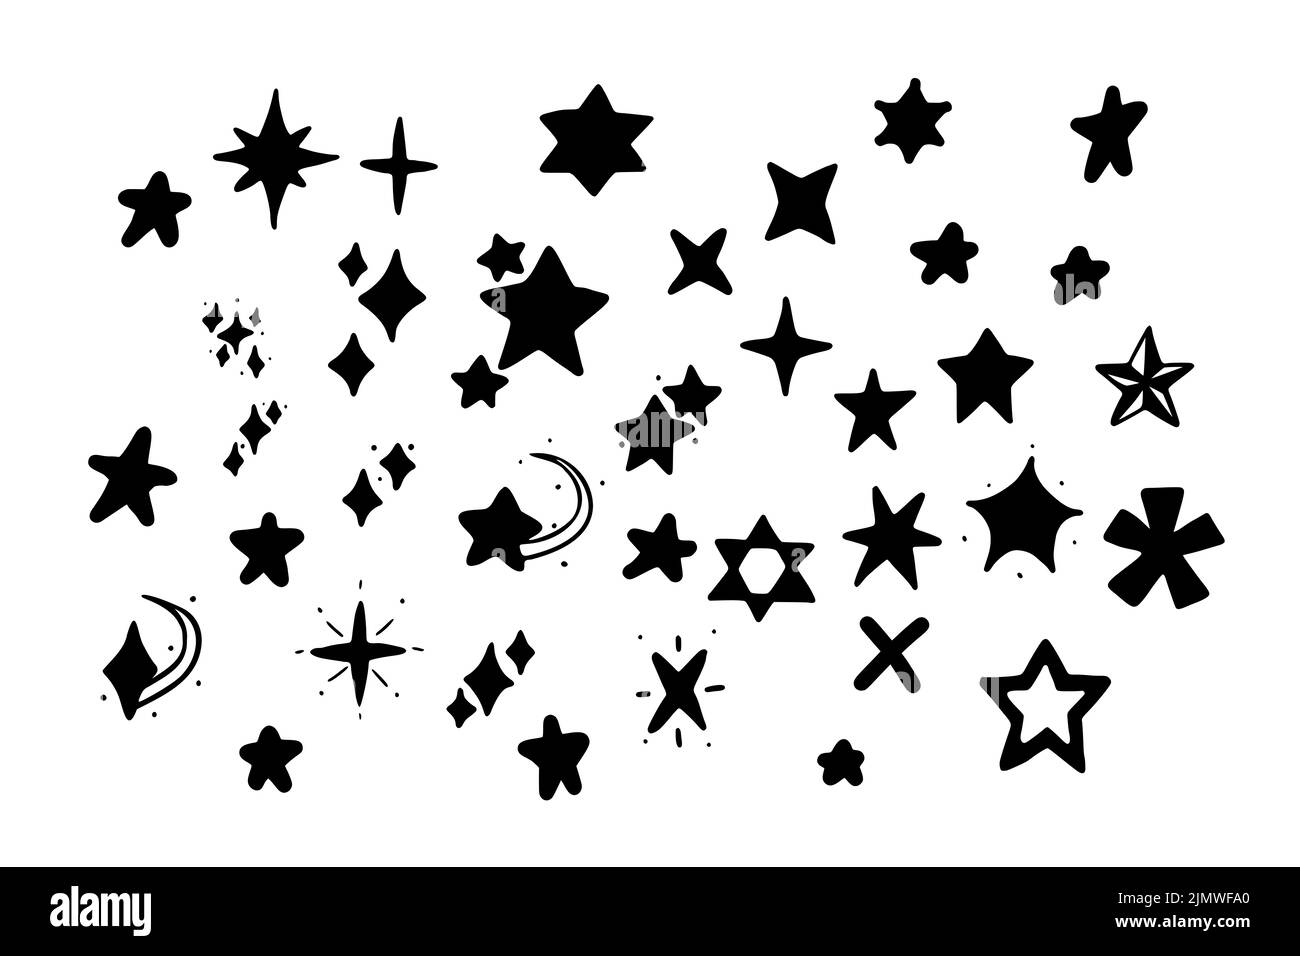 Set vettoriale di stelle in stile doodle isolato su sfondo bianco. Illustrazione del vettore glifo delle stelle disegnate a mano. Foto Stock